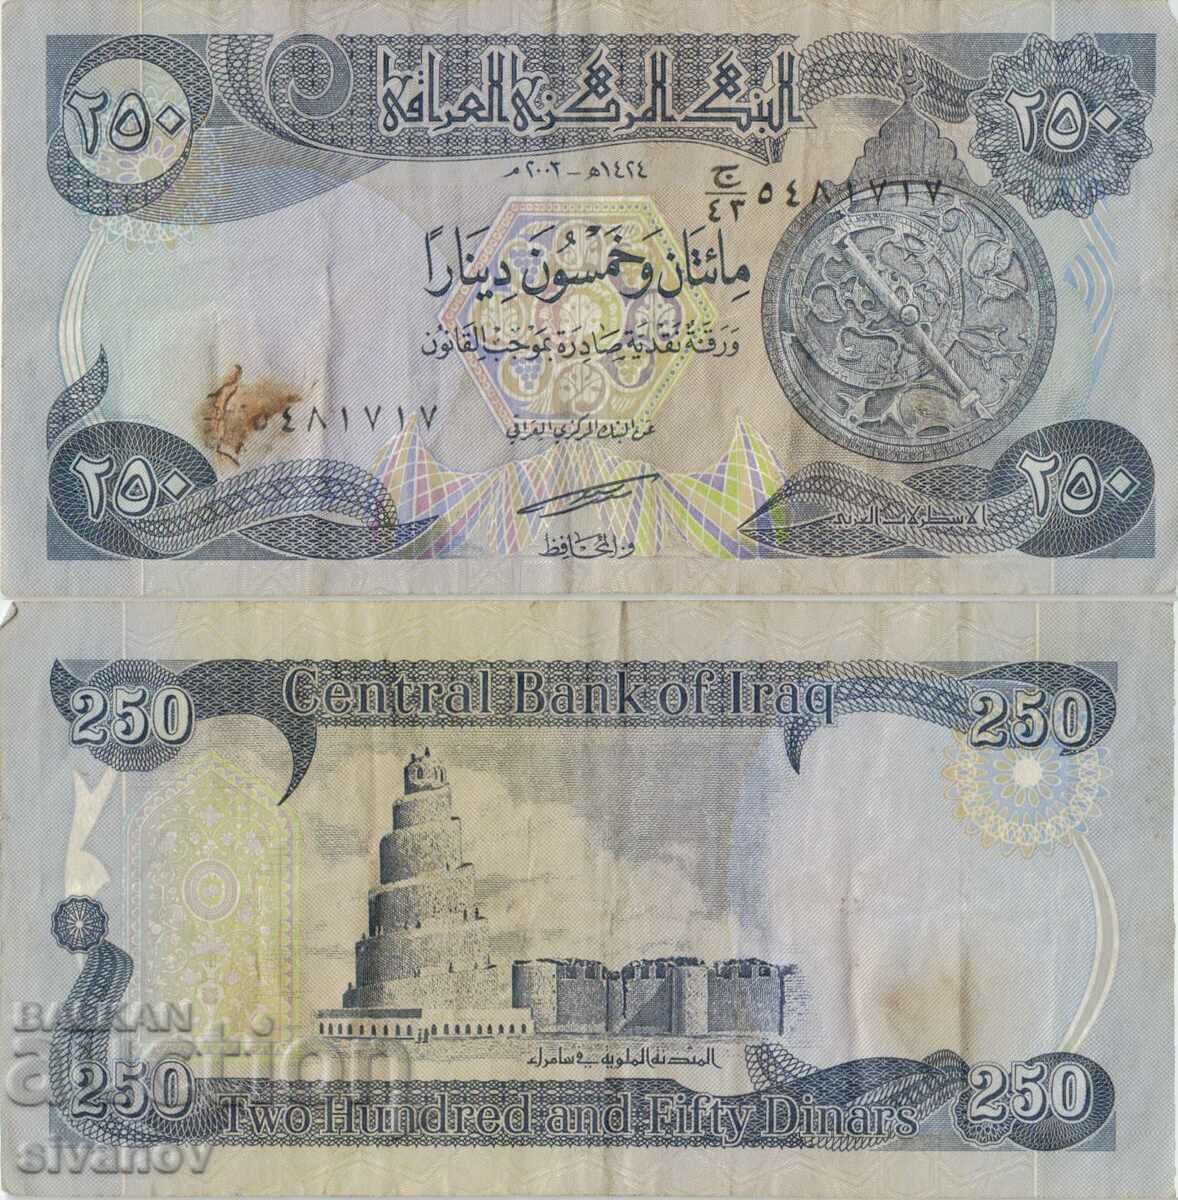 Iraq 250 dinars 2003 banknote #5123